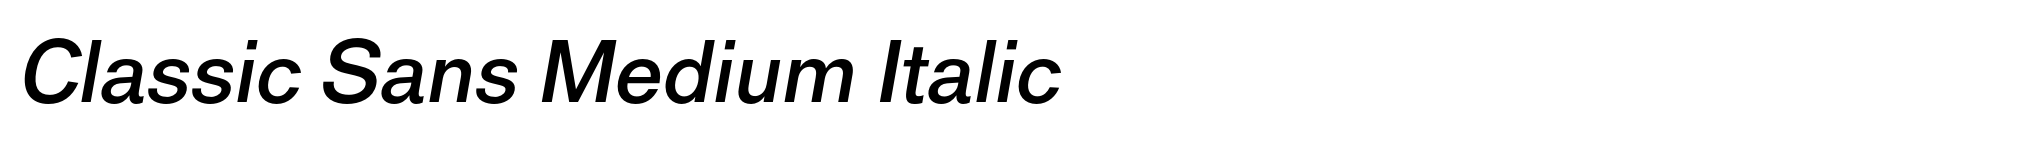 Classic Sans Medium Italic image